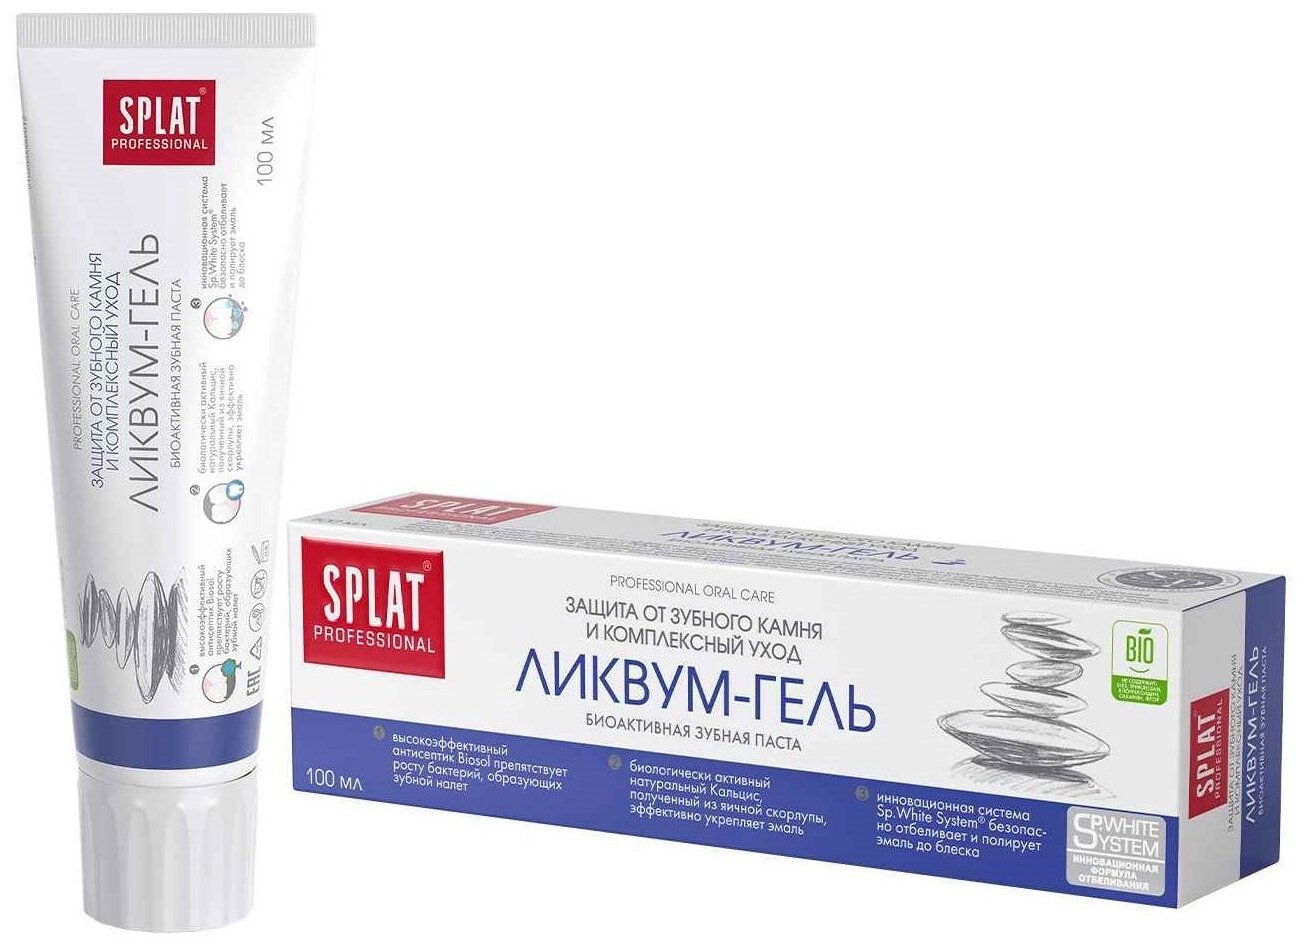 SPLAT Professional Зубная паста с эффектом отбеливания и защиты от зубного камня ликвум-гель, 100 мл.